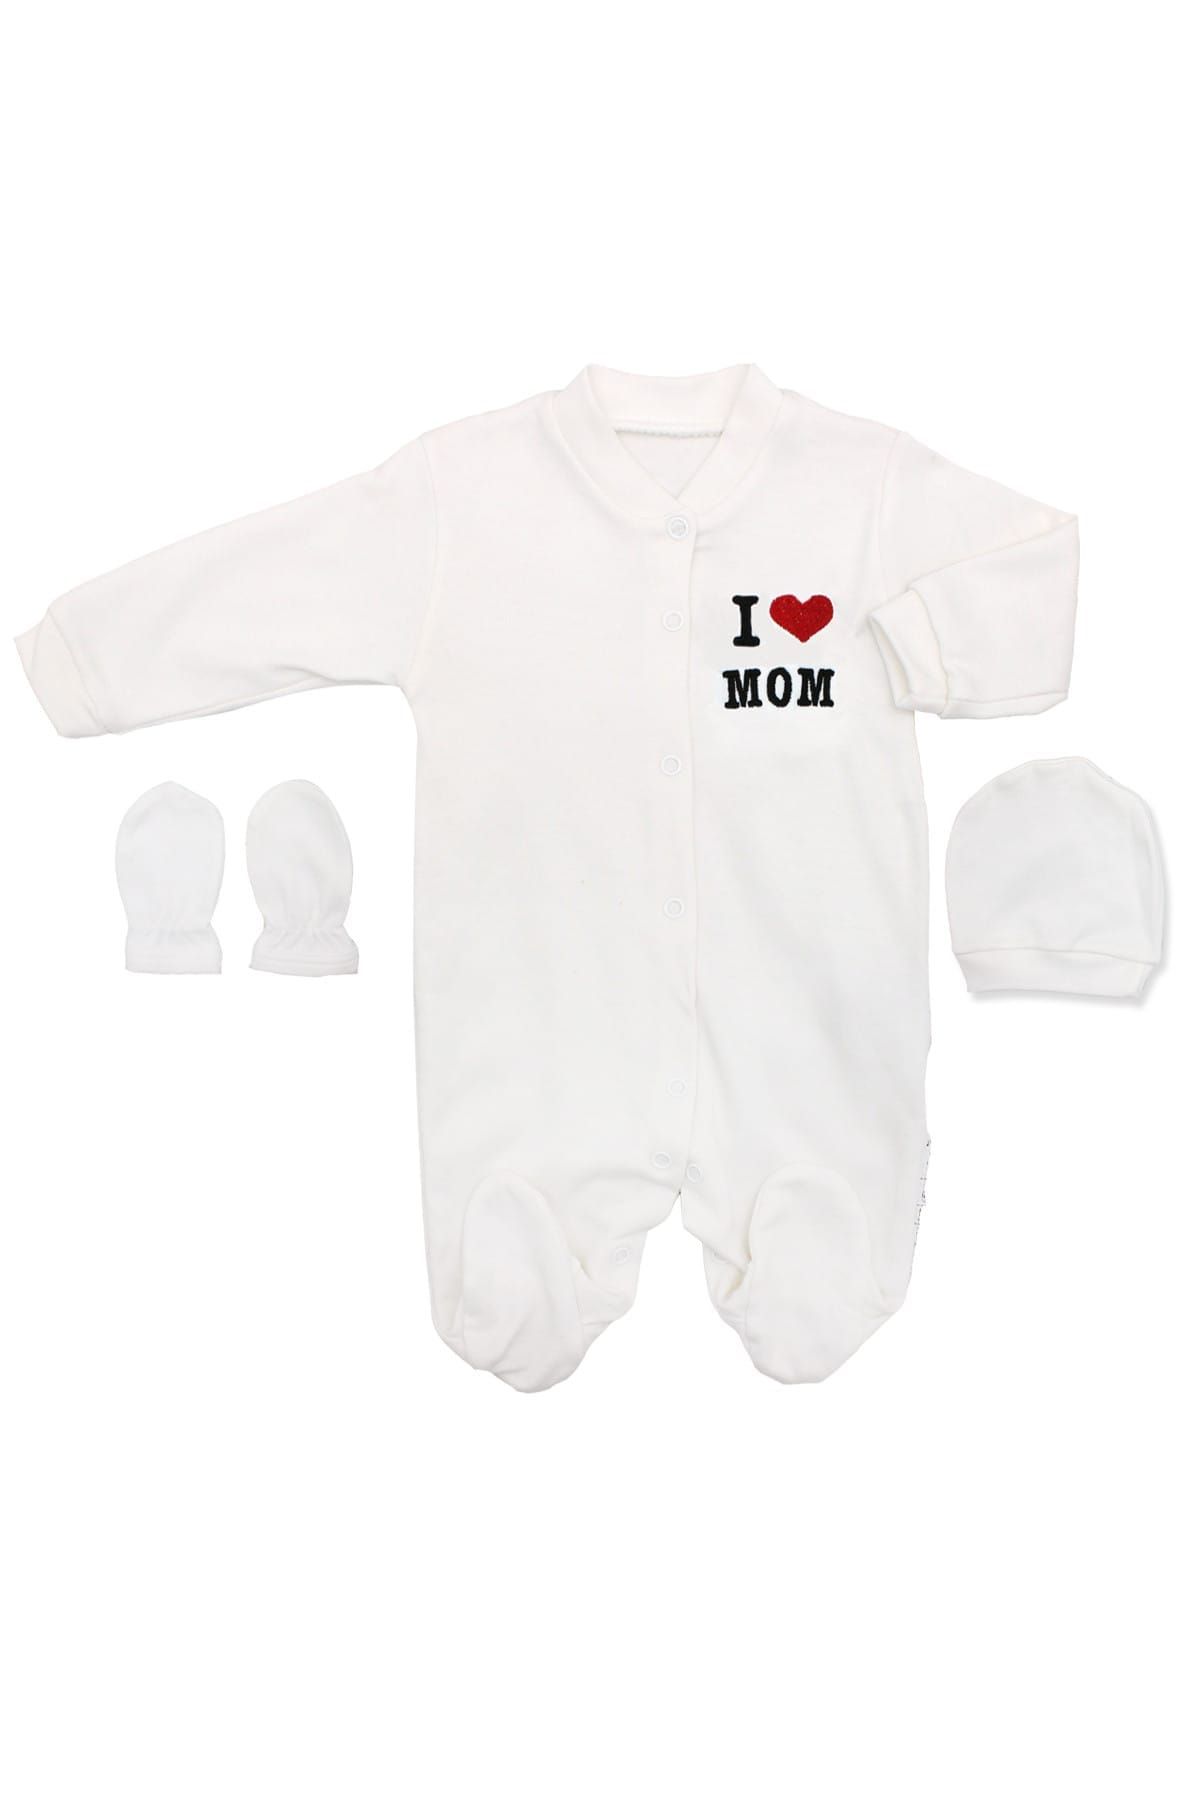 Necix's Bebe I Love Mom Beyaz 3'Lü Bebek Tulumu K2755